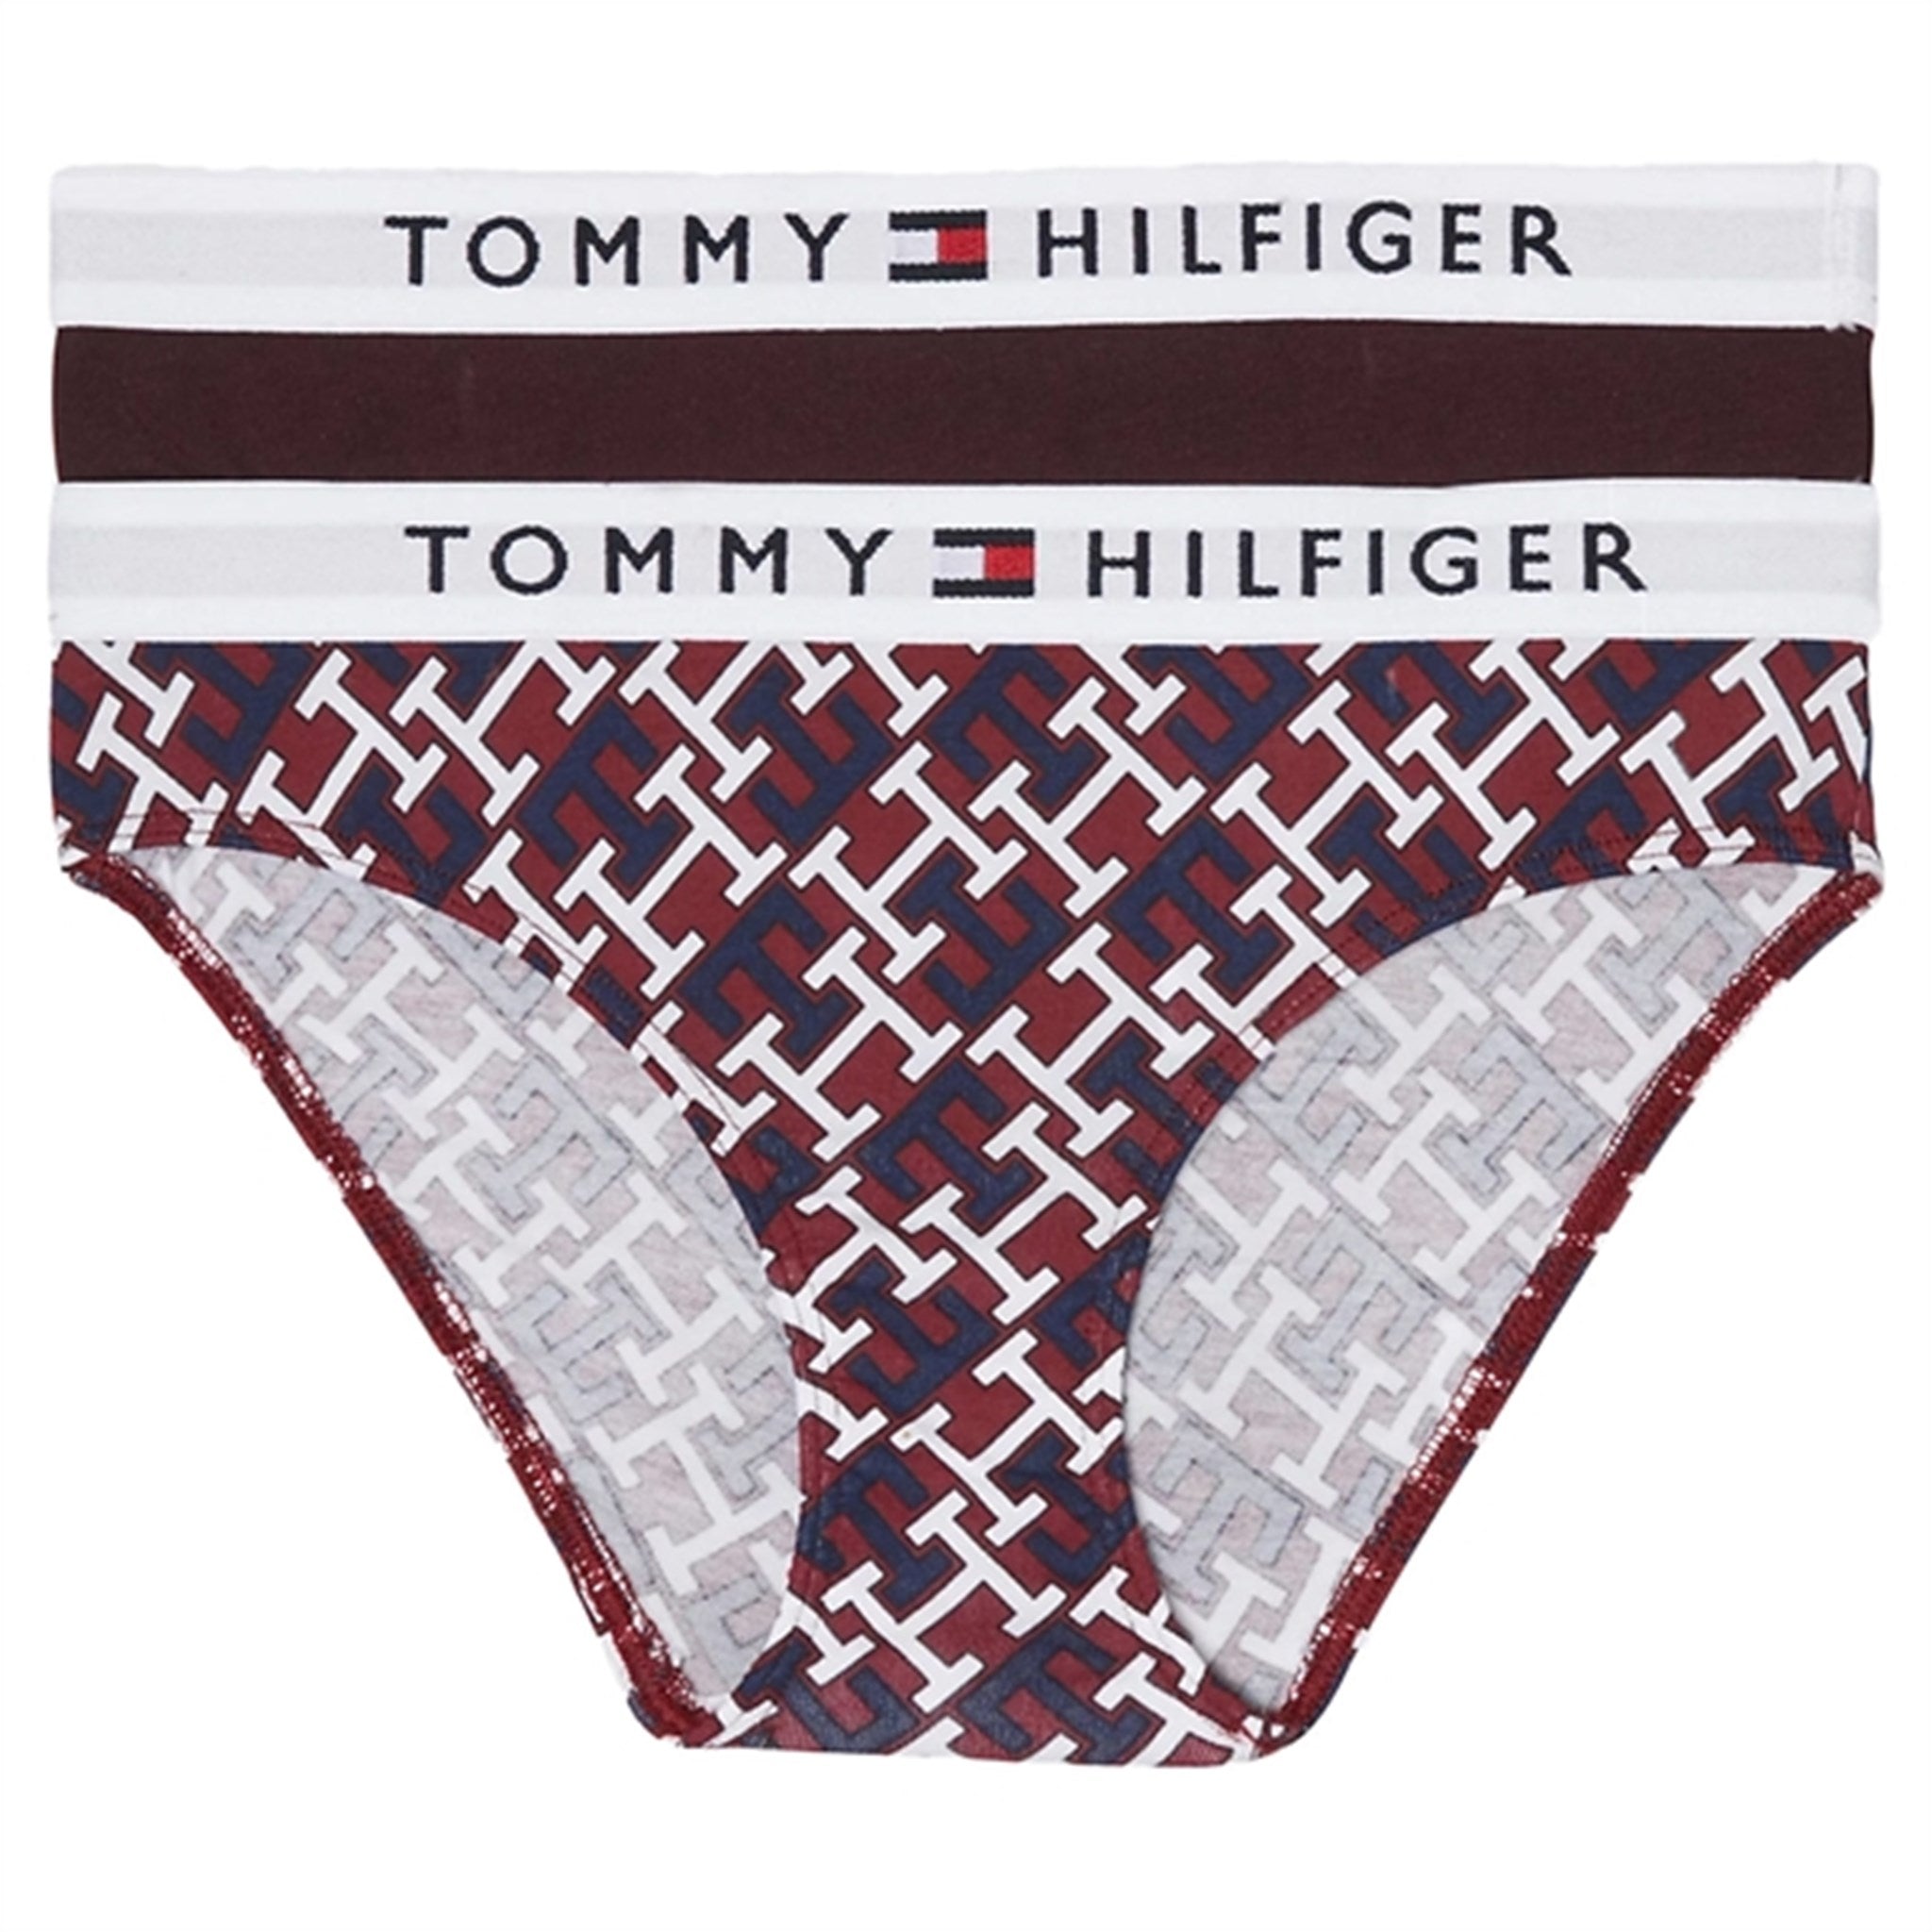 Tommy Hilfiger Trosor 2-Pack Monogram / Deep Burgundy